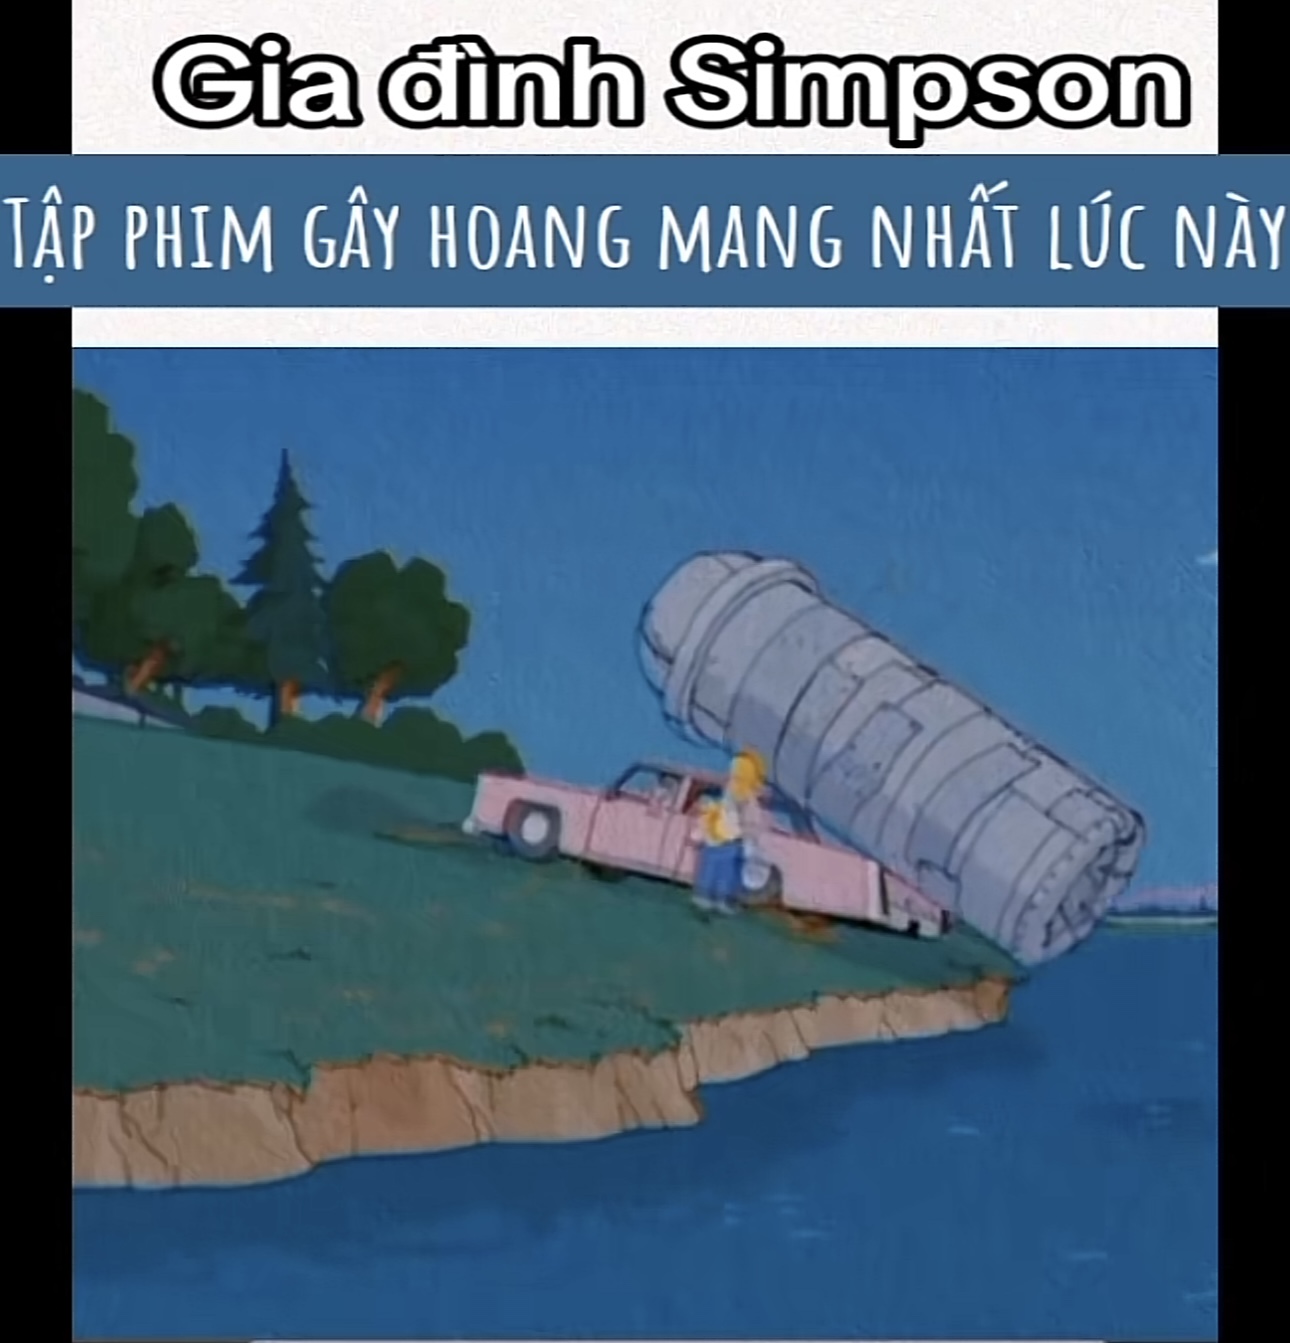 Đoạn phim 'Gia đình Simpsons' có chi tiết xả thải xuống hồ